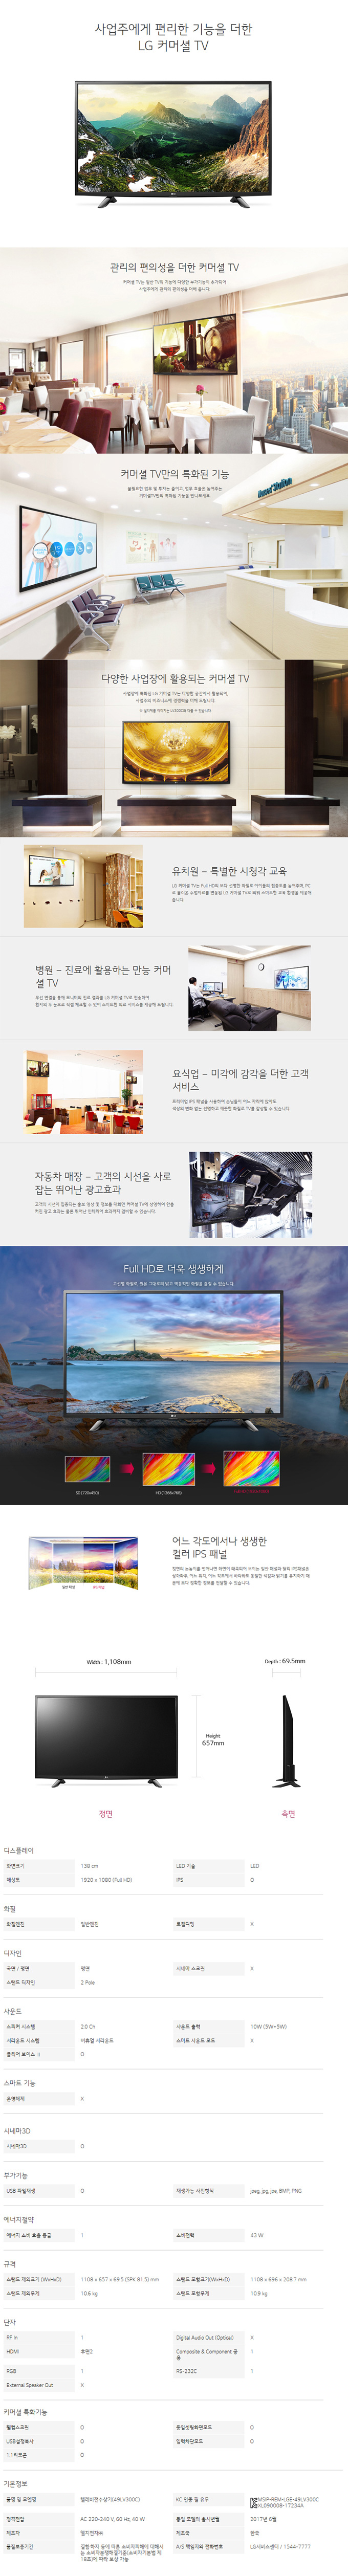 중랑케이블 - LG 49인치 LED TV (49LV300C) 상세보기